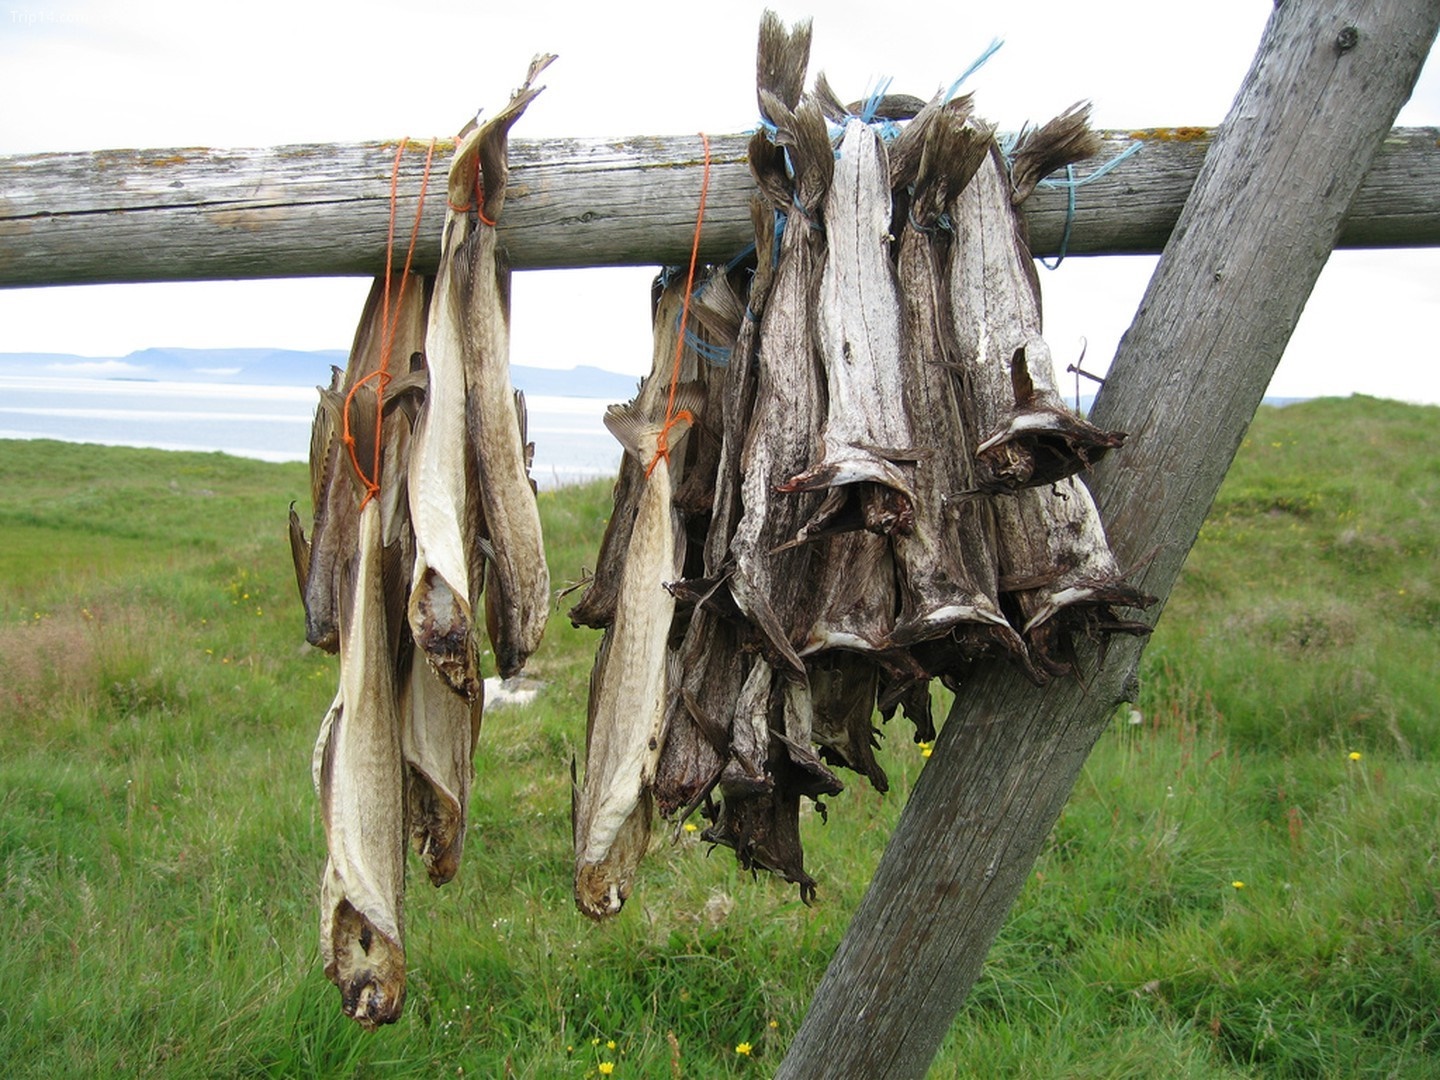 Harðfiskur là món cá khô nổi tiếng